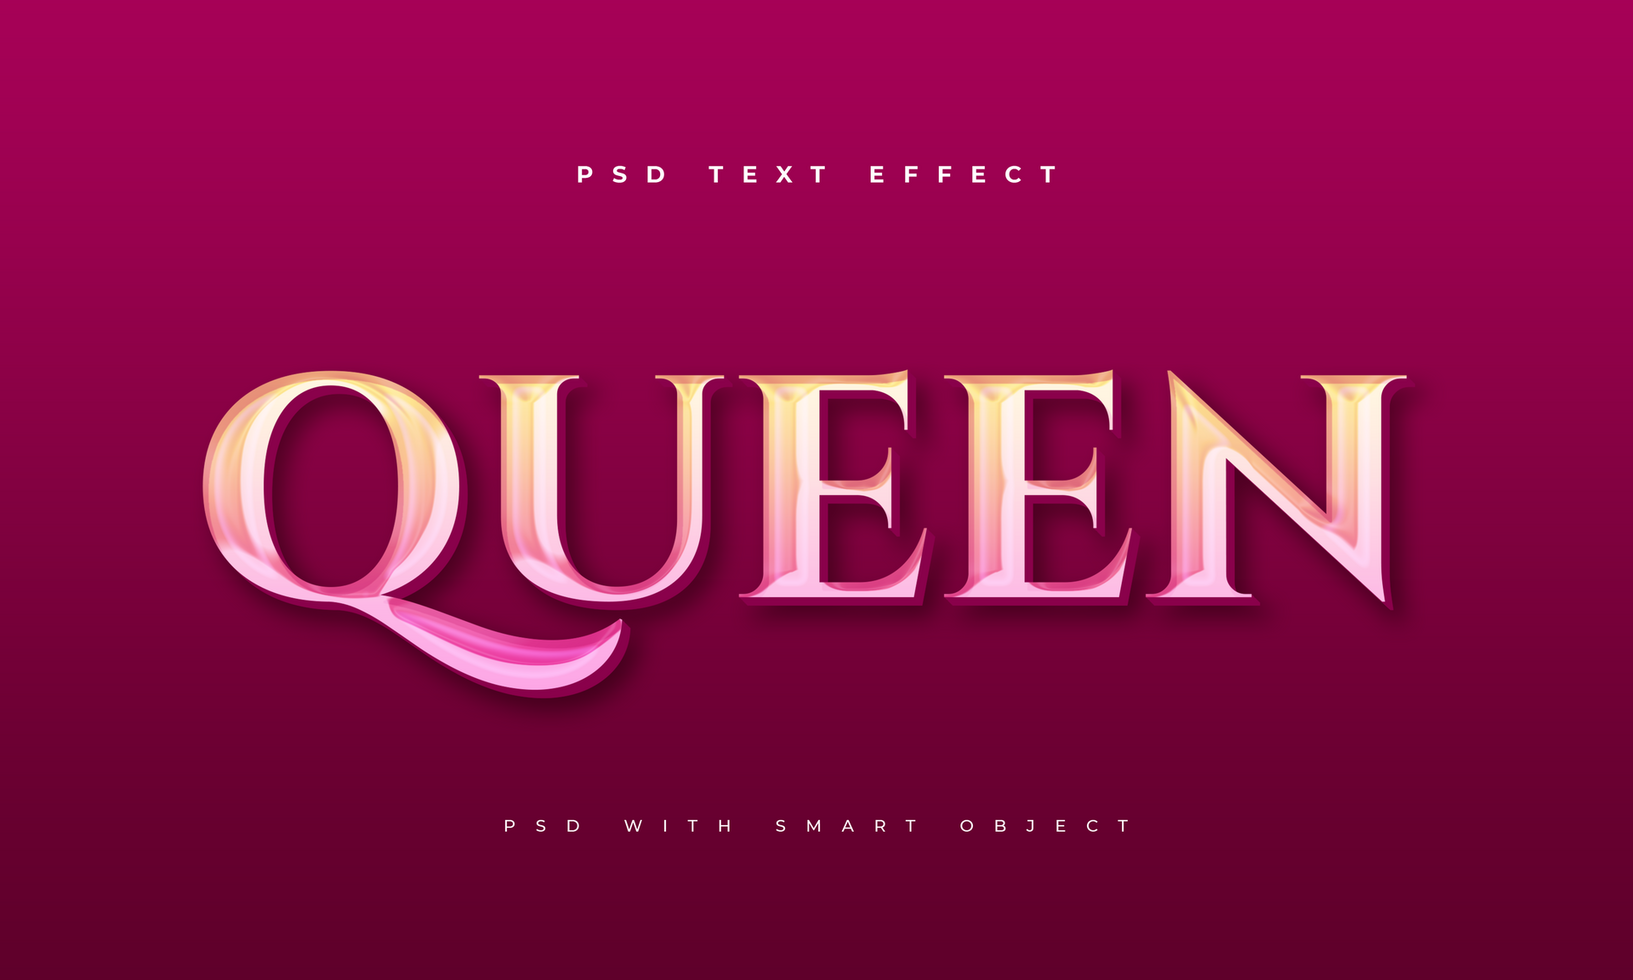 Queen text effect psd